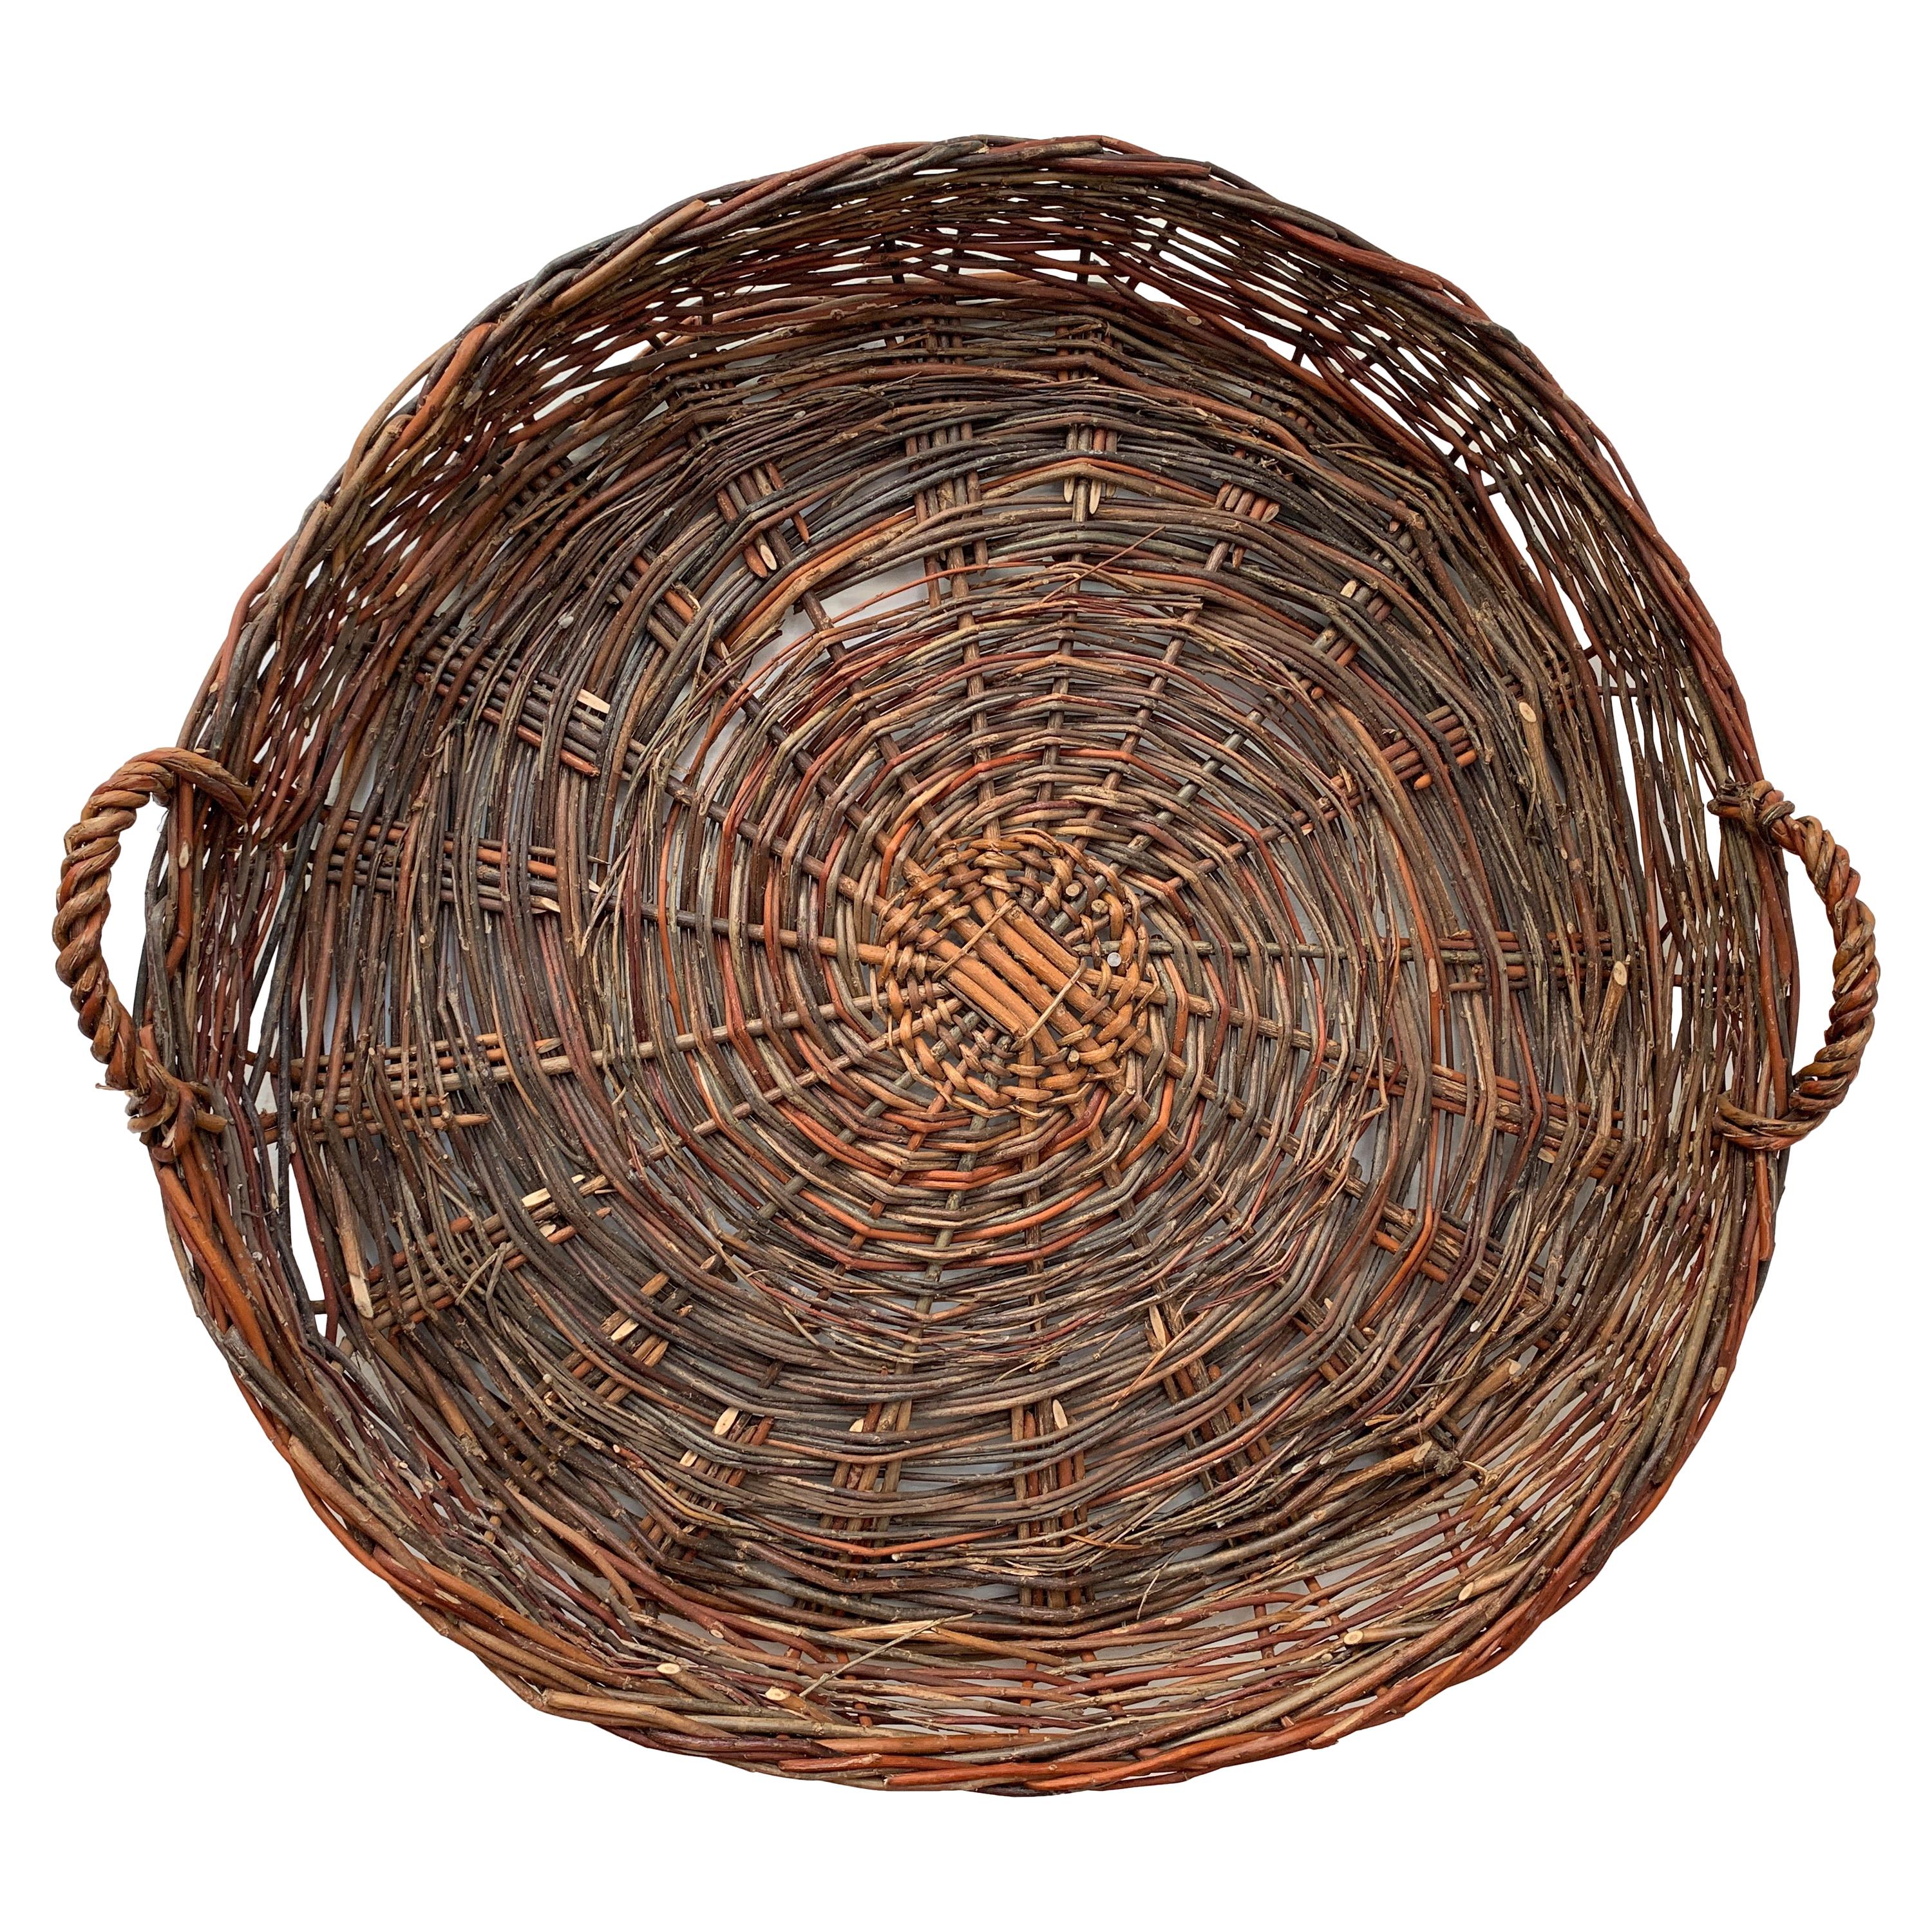 Vintage European Flat Basket